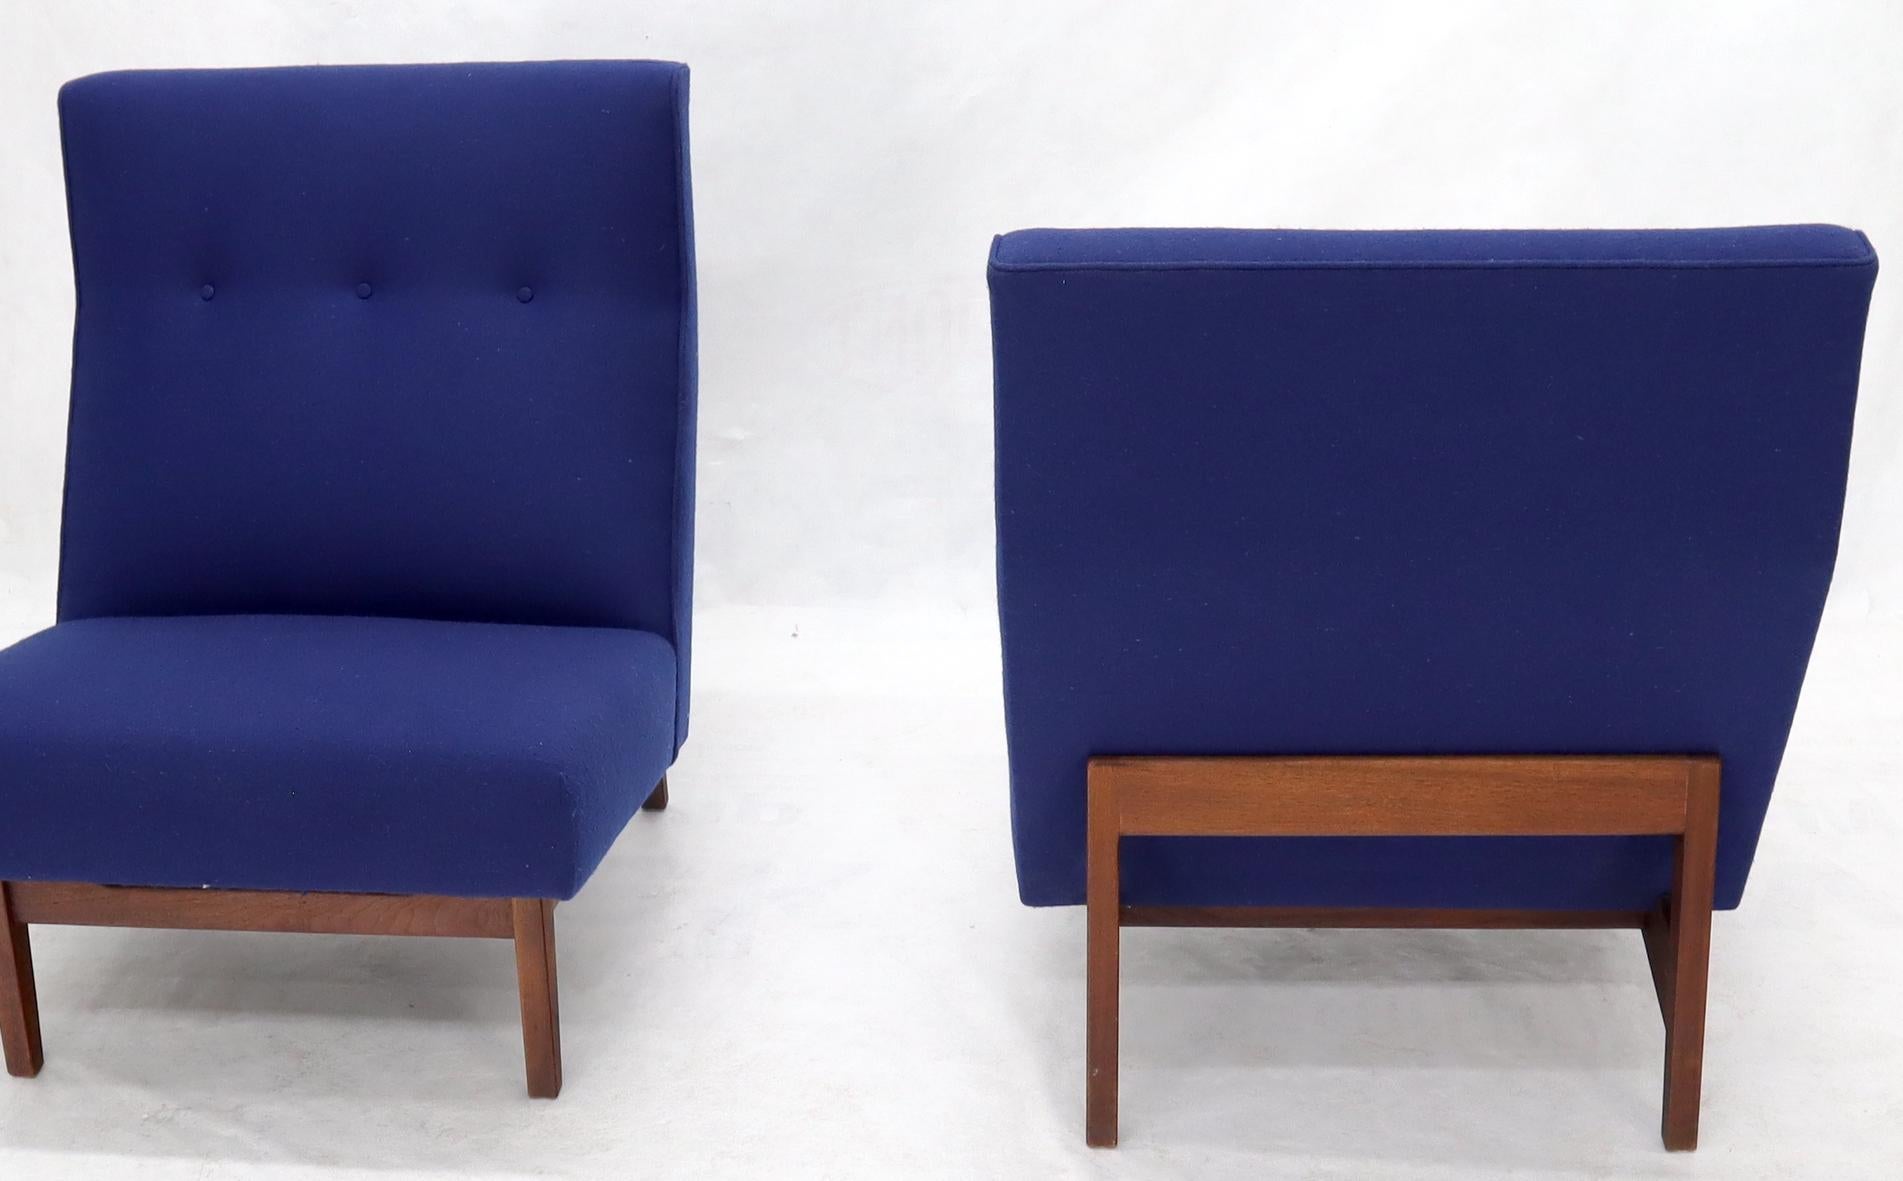 Paire de chaises longues classiques Jens Risom, tapissées de laine bleu marine. Superbes cadres en noyer huilé.